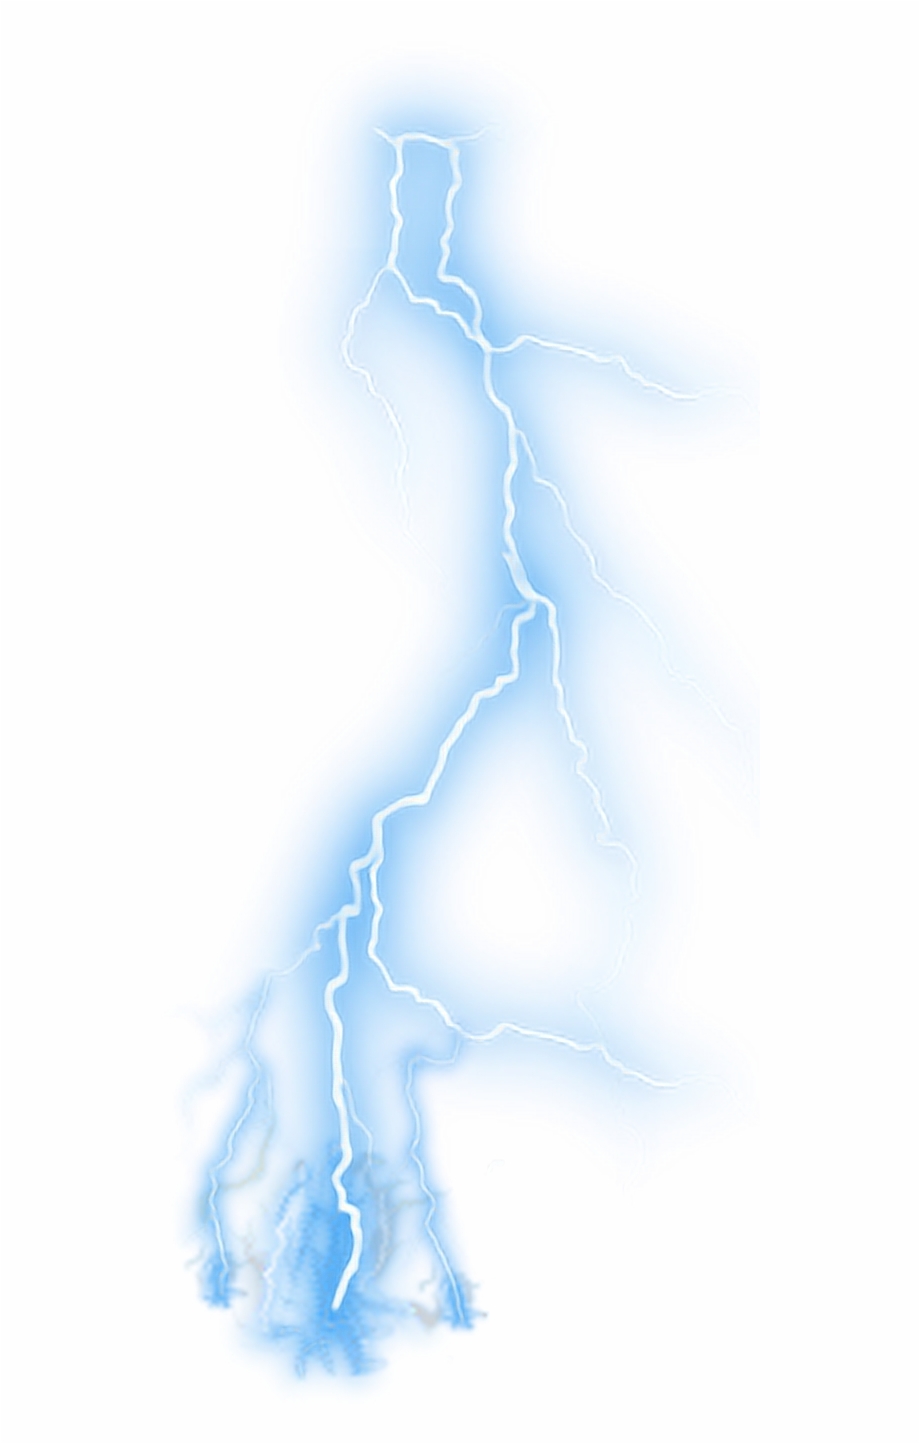 Lightning Lightningbolt Neon Bluelightning Storm Blue Lightning Clear